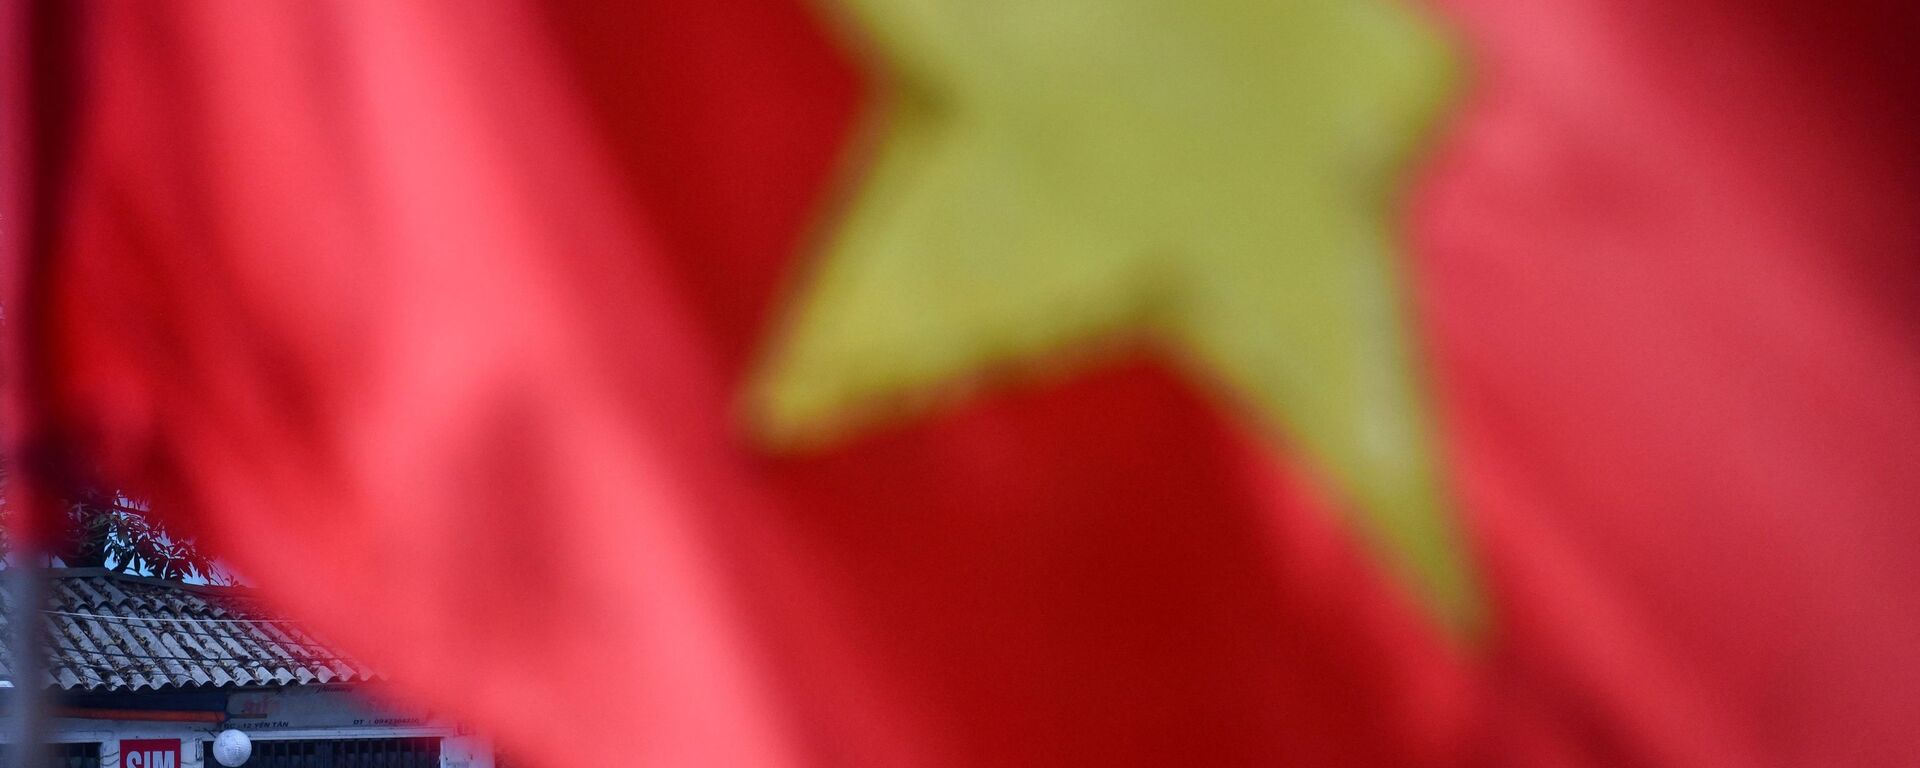 Cột cờ Việt Nam, Hà Nội. - Sputnik Việt Nam, 1920, 28.09.2021